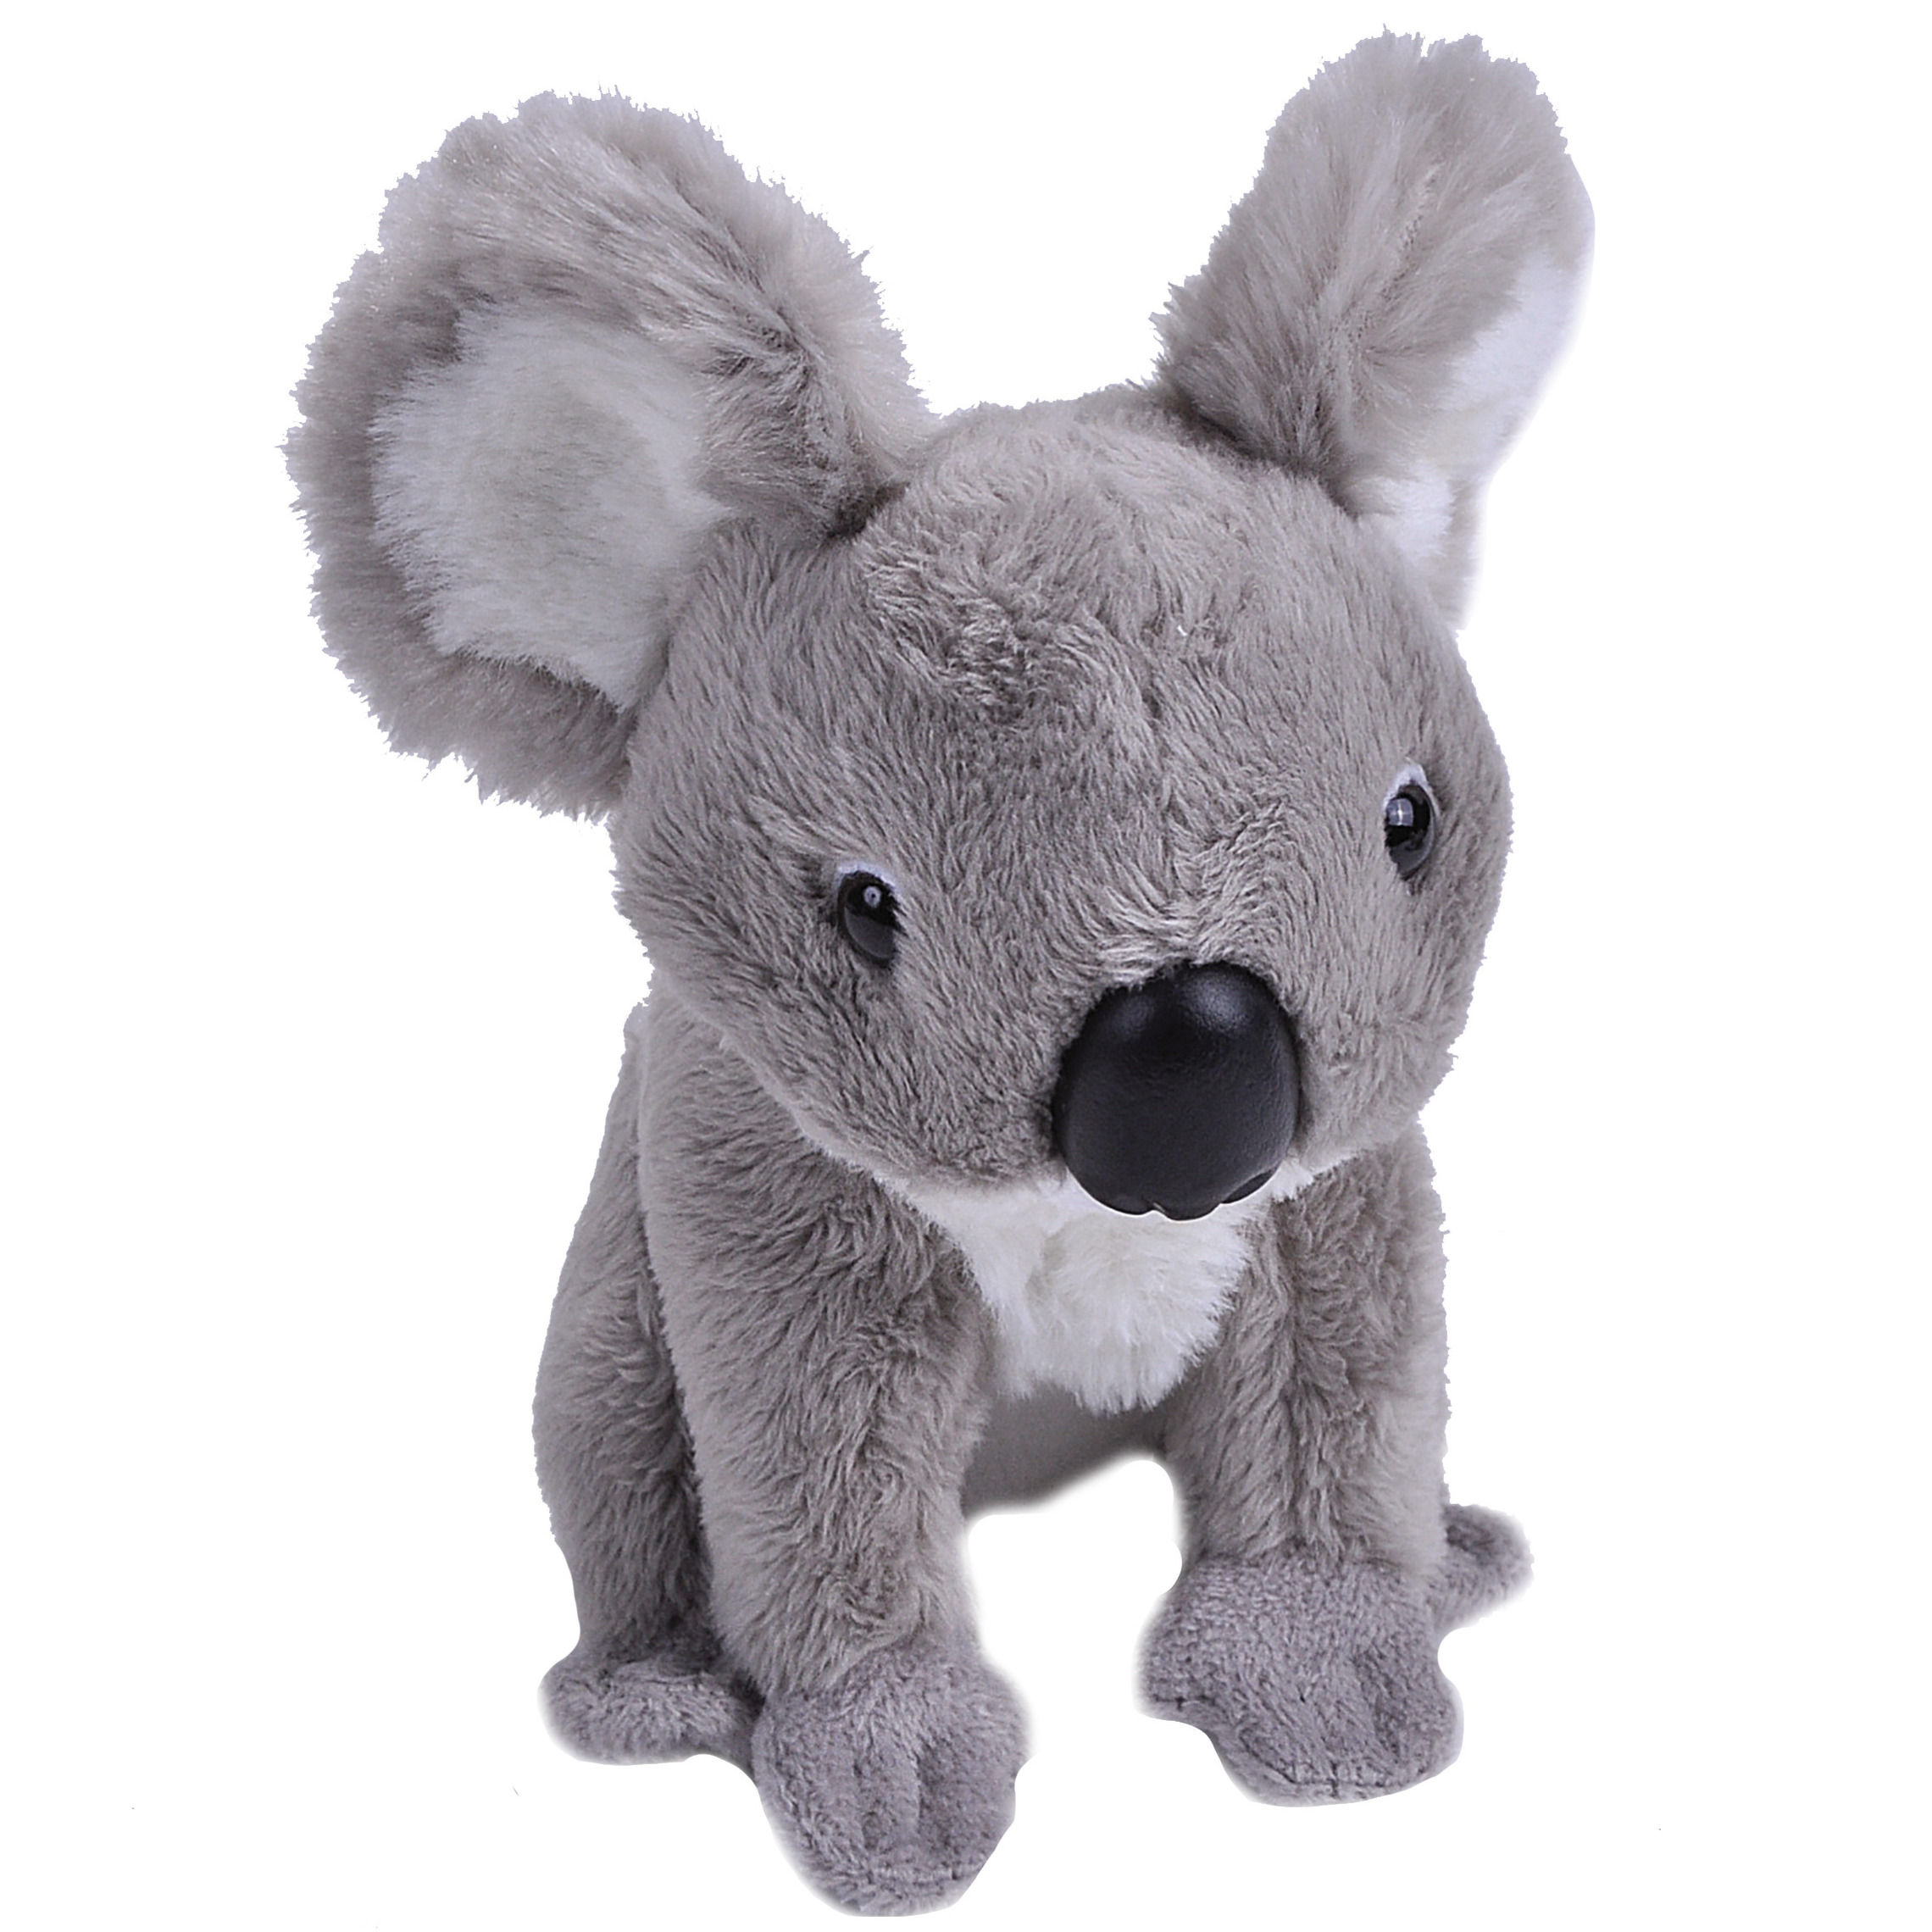 Pluche knuffel Koala beer van 13 cm